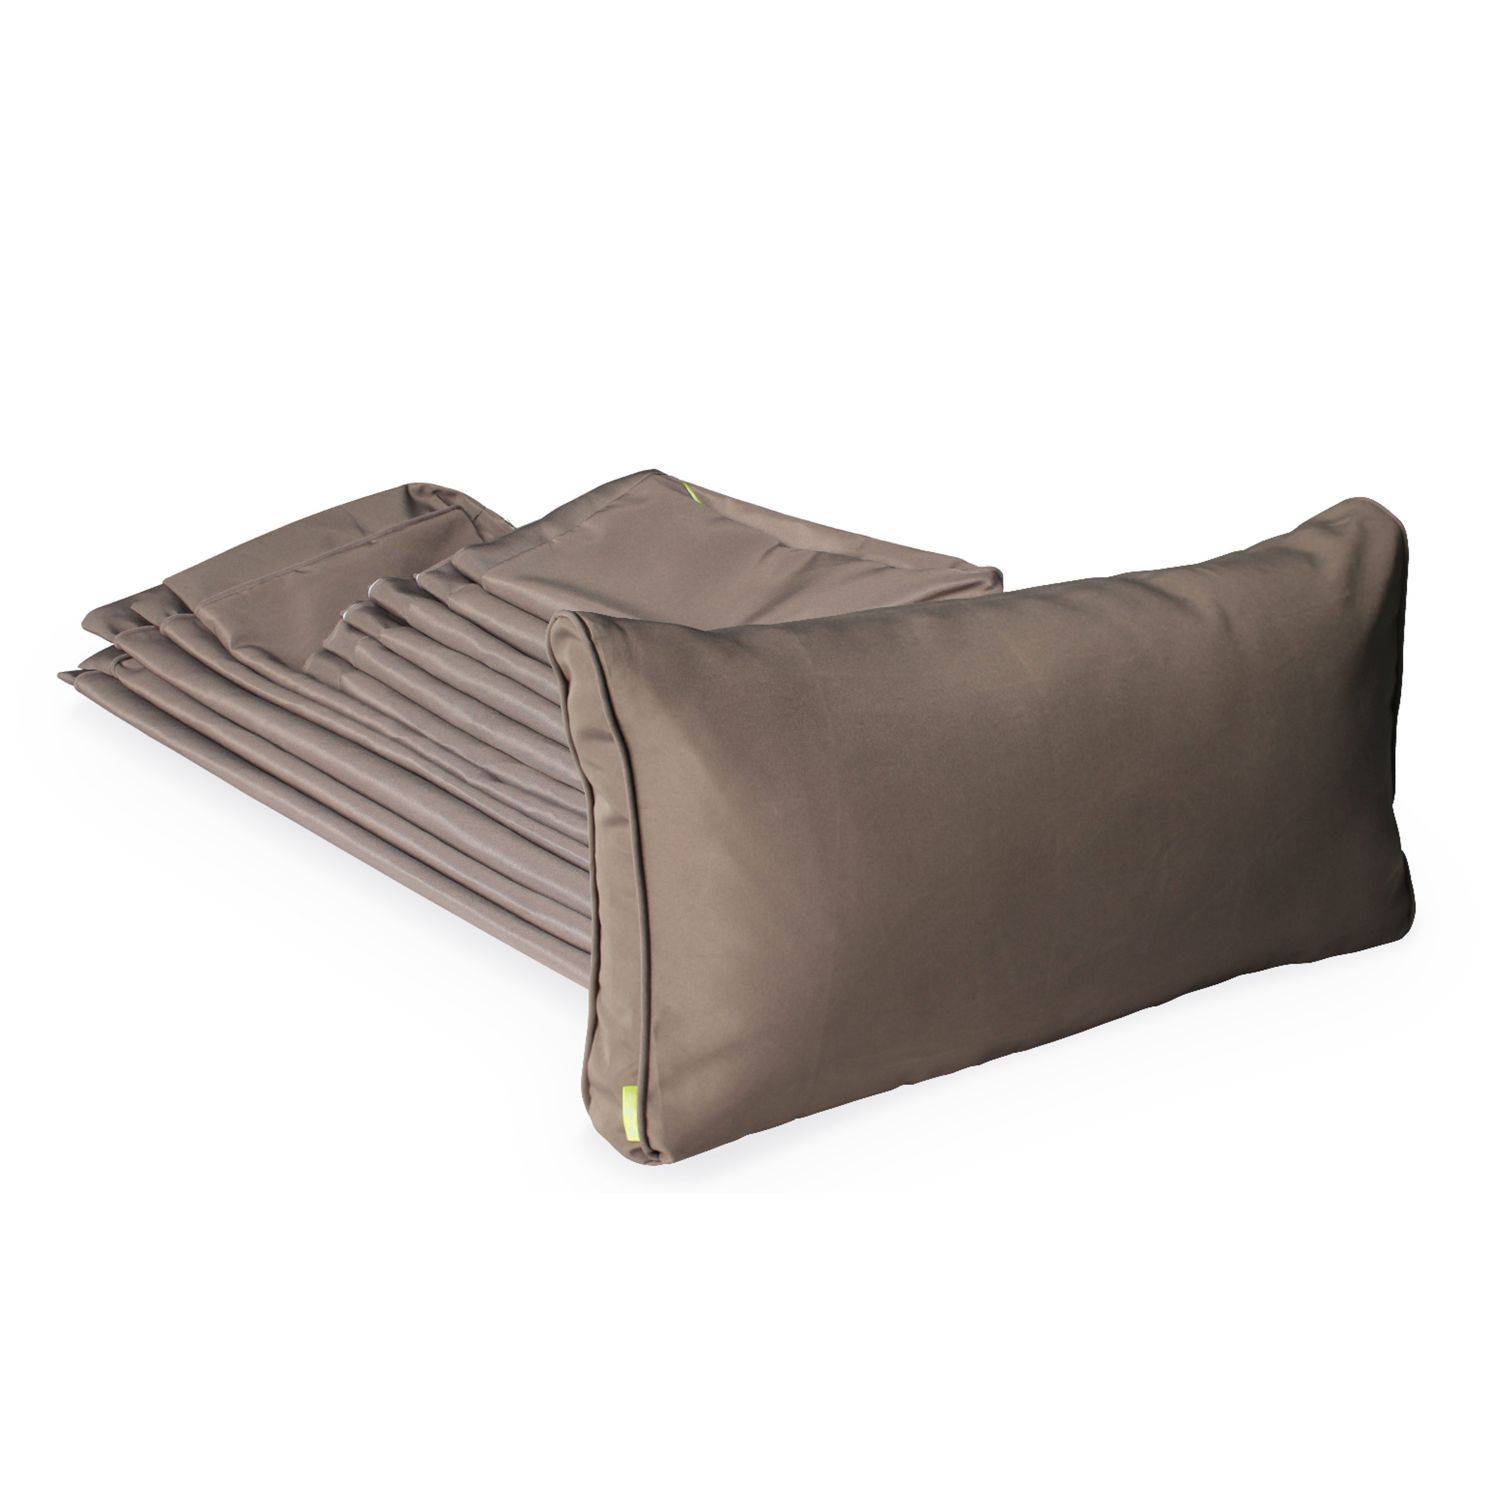 Complete set of cushion covers - Caligari - Beige-Brown,sweeek,Photo2